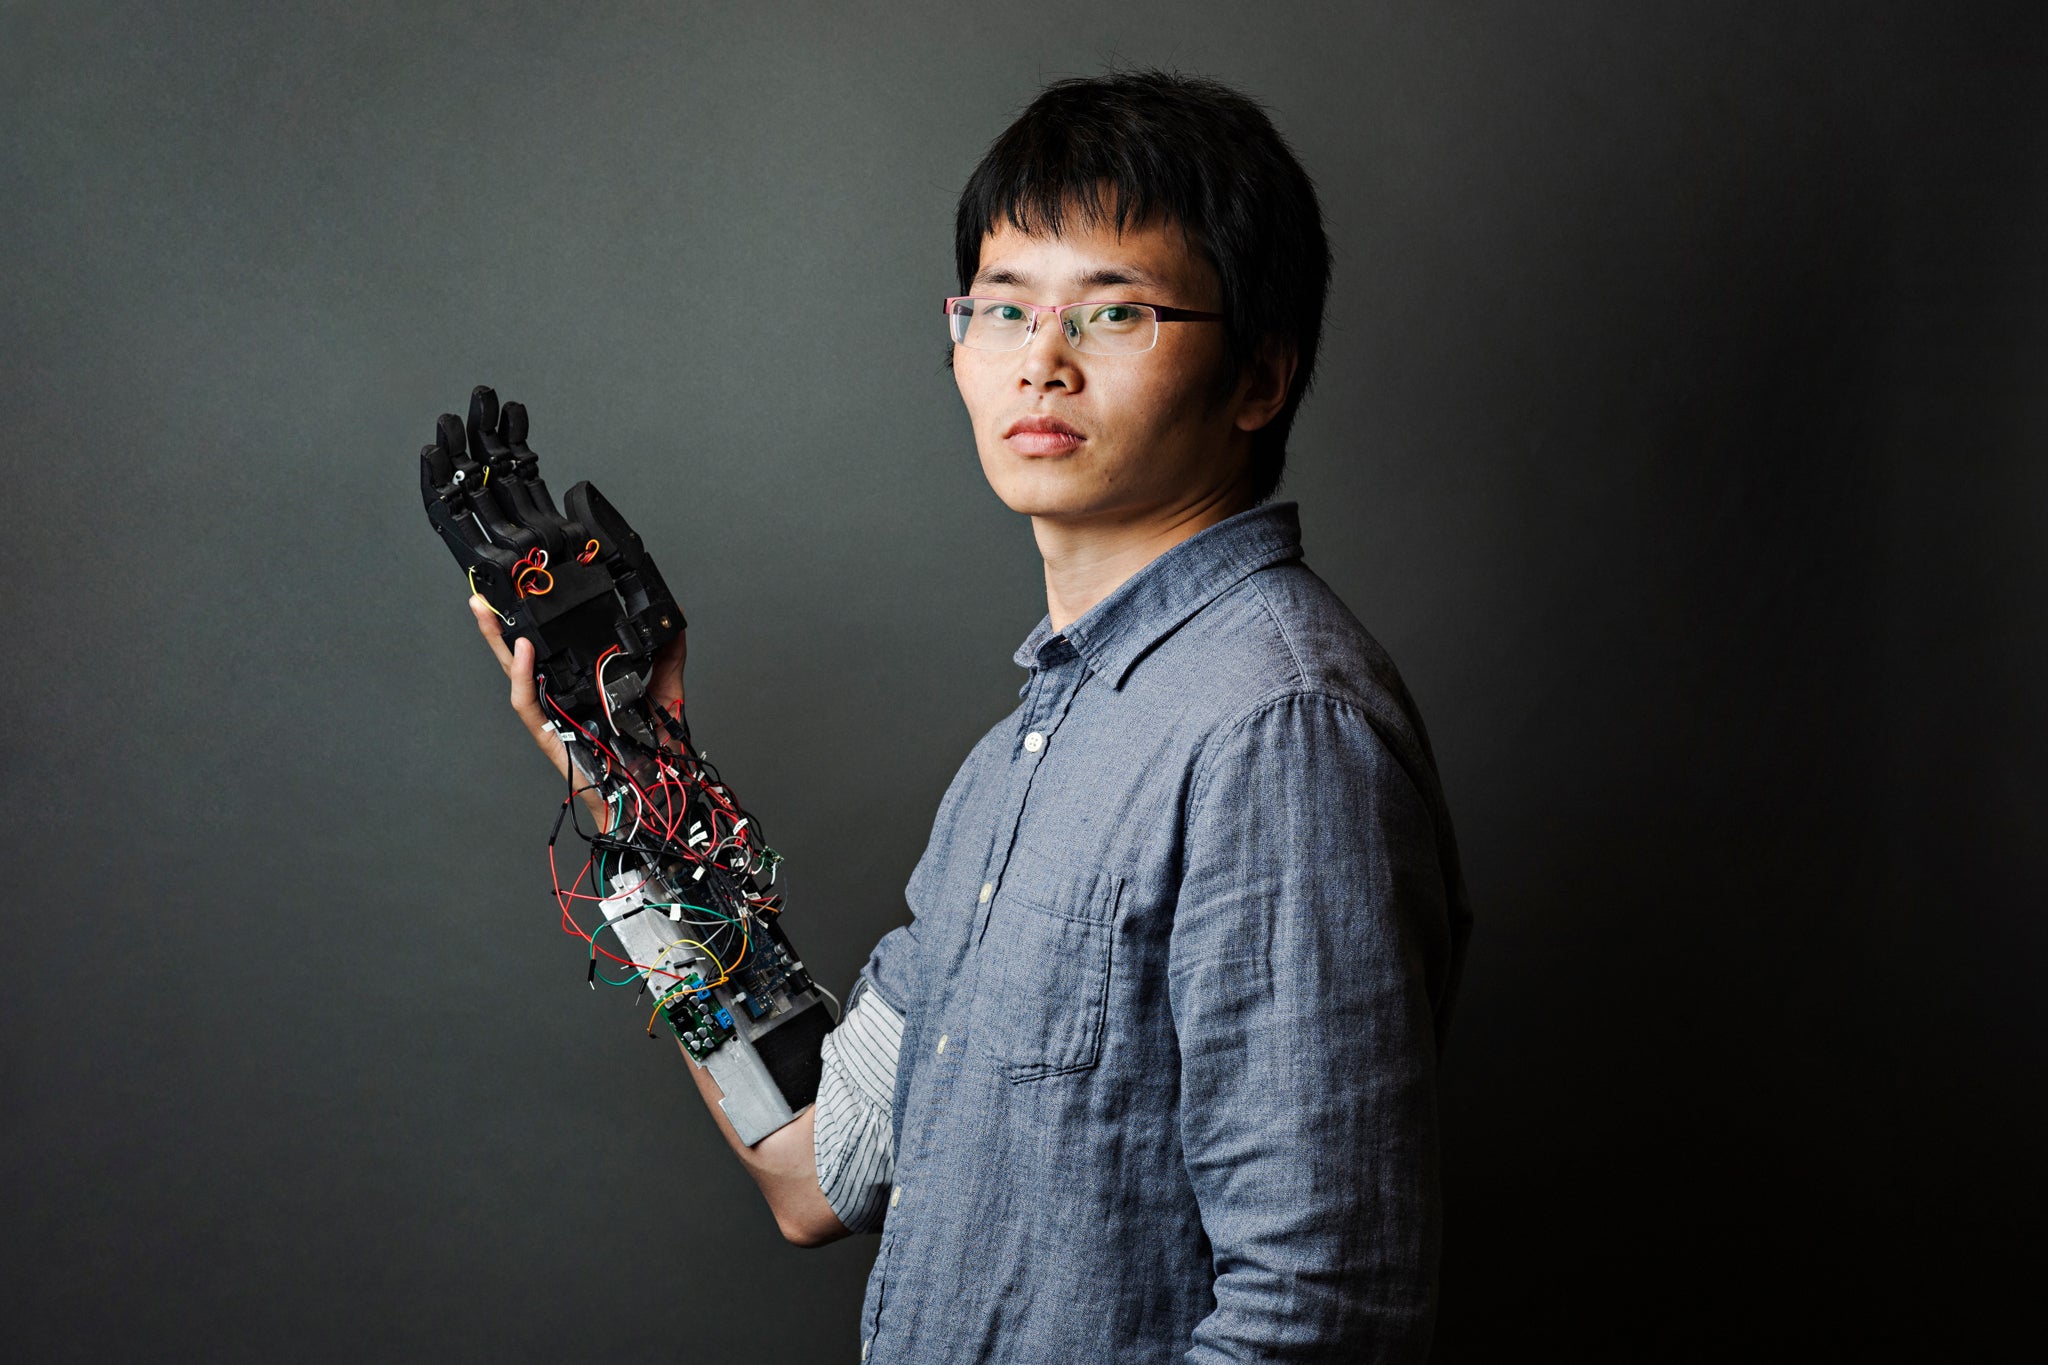 Jiayuan He holds a smart prosthetic